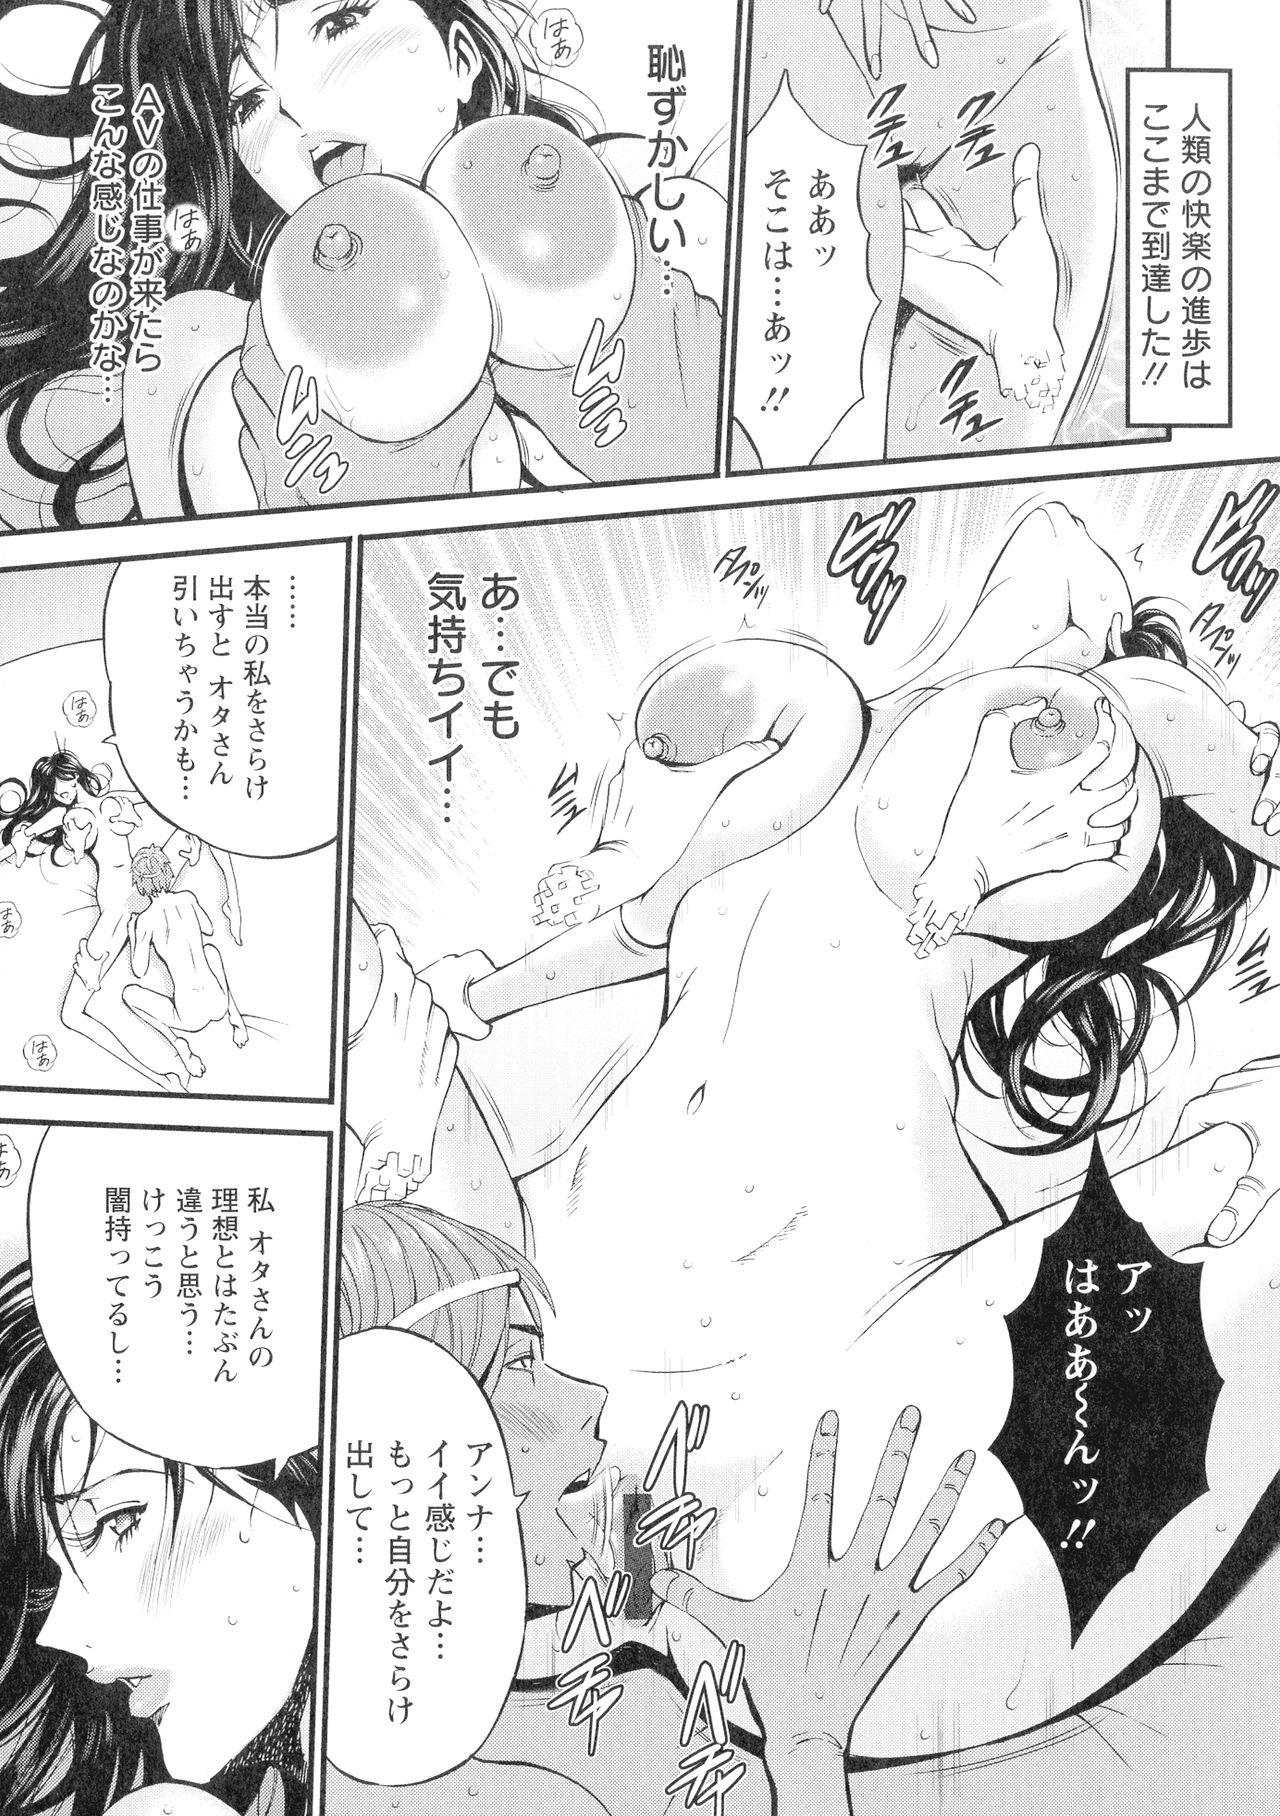 [Nakashima Chosuke] Seireki 2200-nen no Ota 3 Zetchou Time-Slip Girl 141